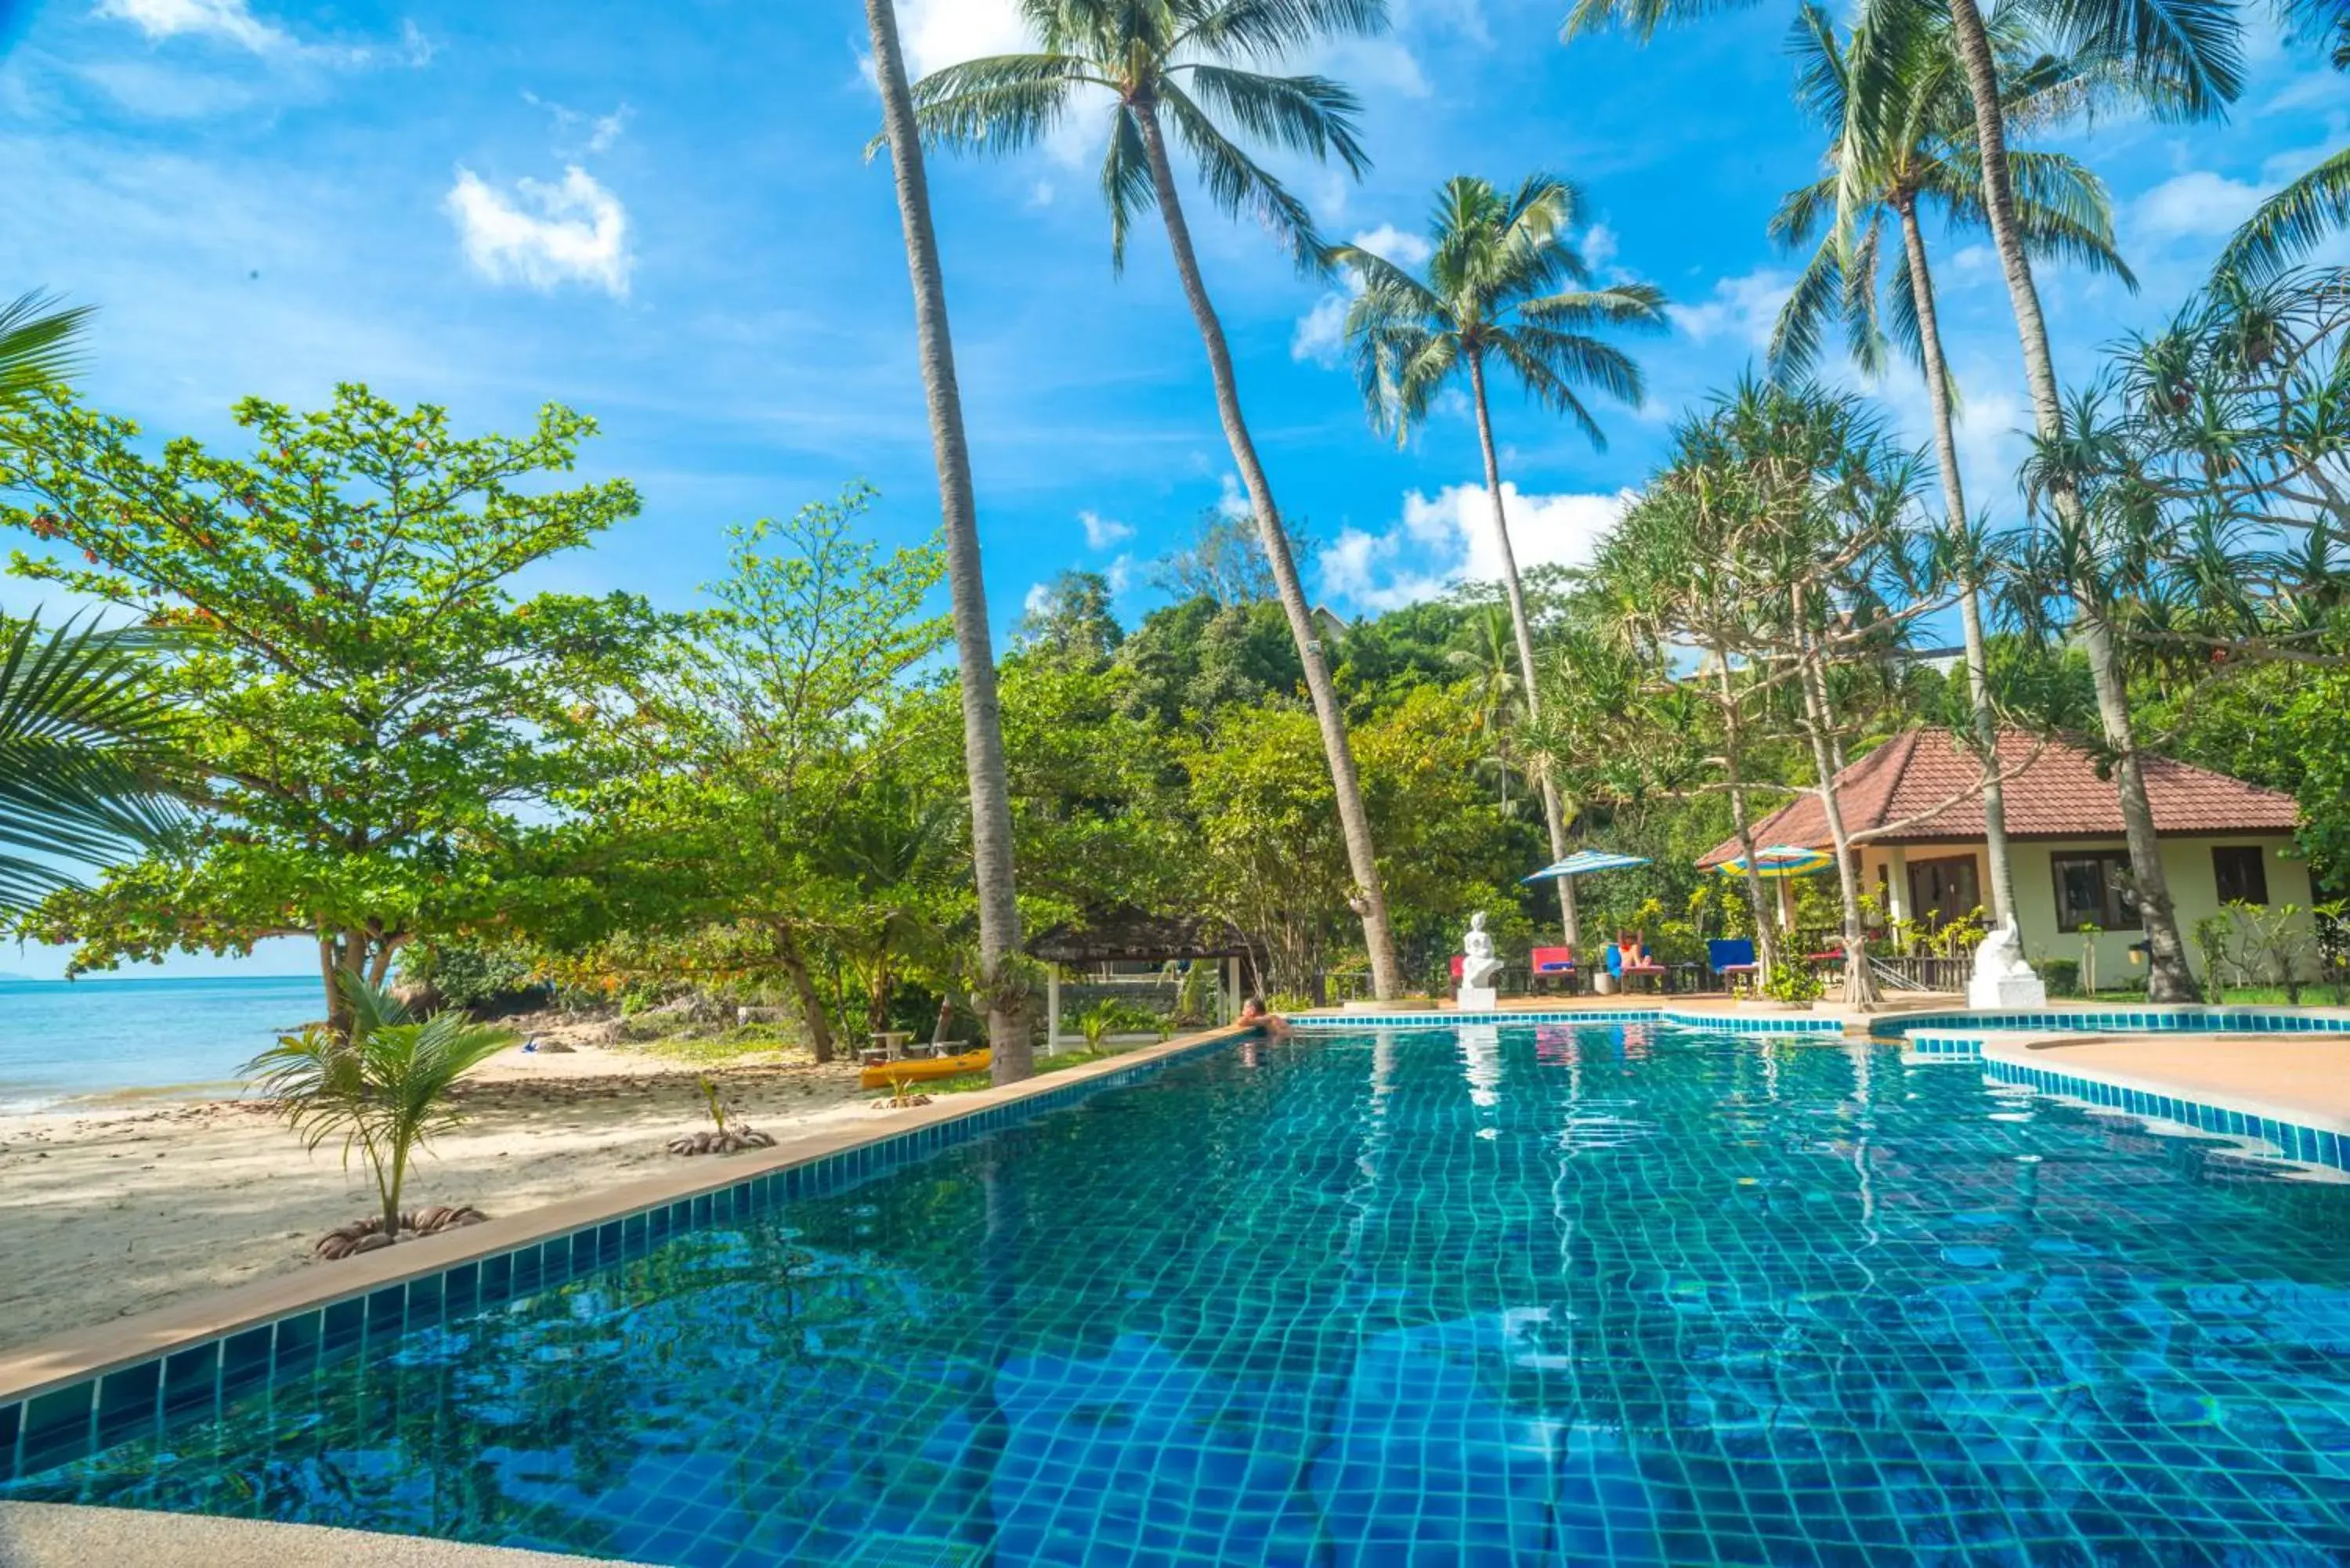 , Swimming Pool in Am Samui Resort Taling Ngam